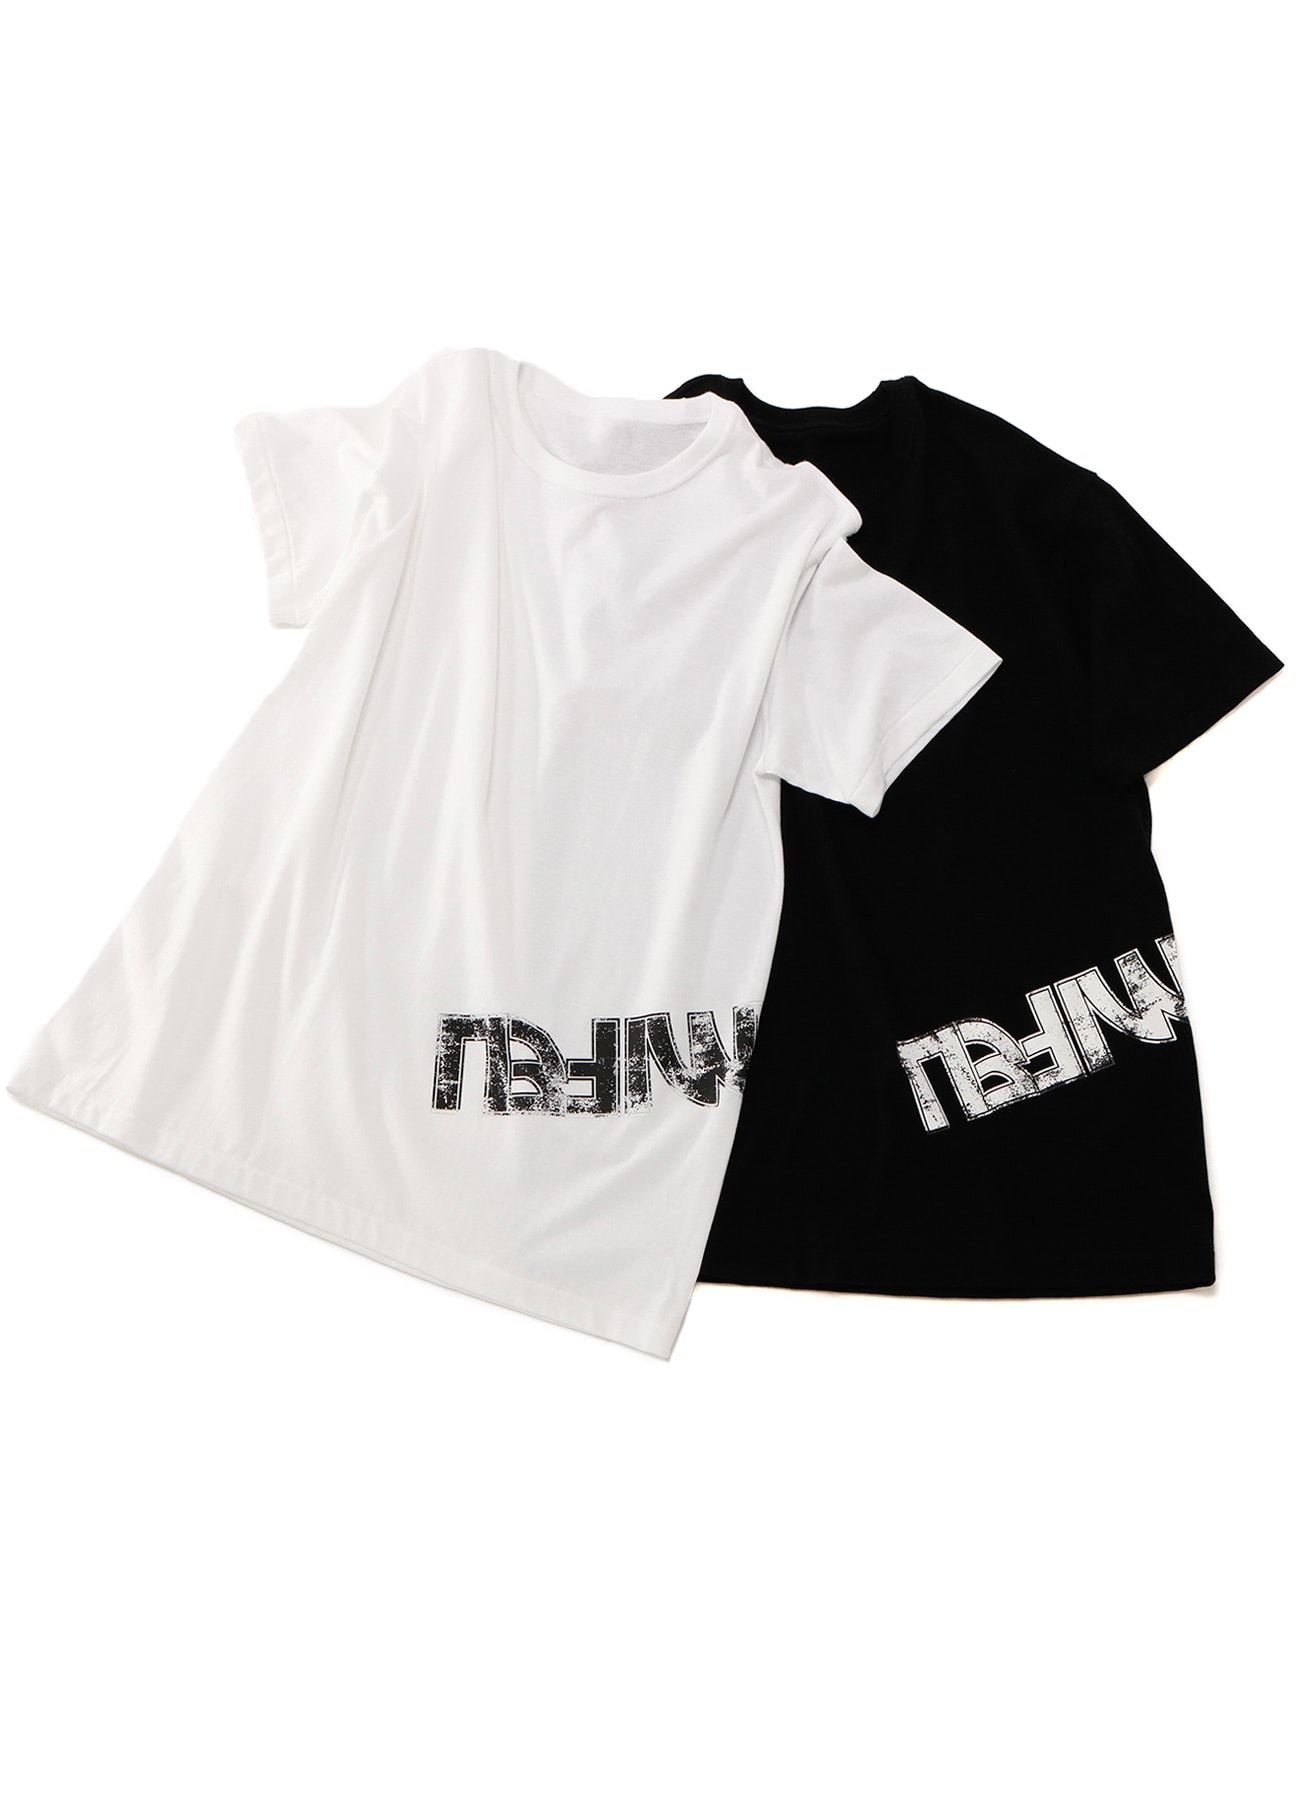 20/-Plain Stitch LIMI FEU Print T-Shirt B